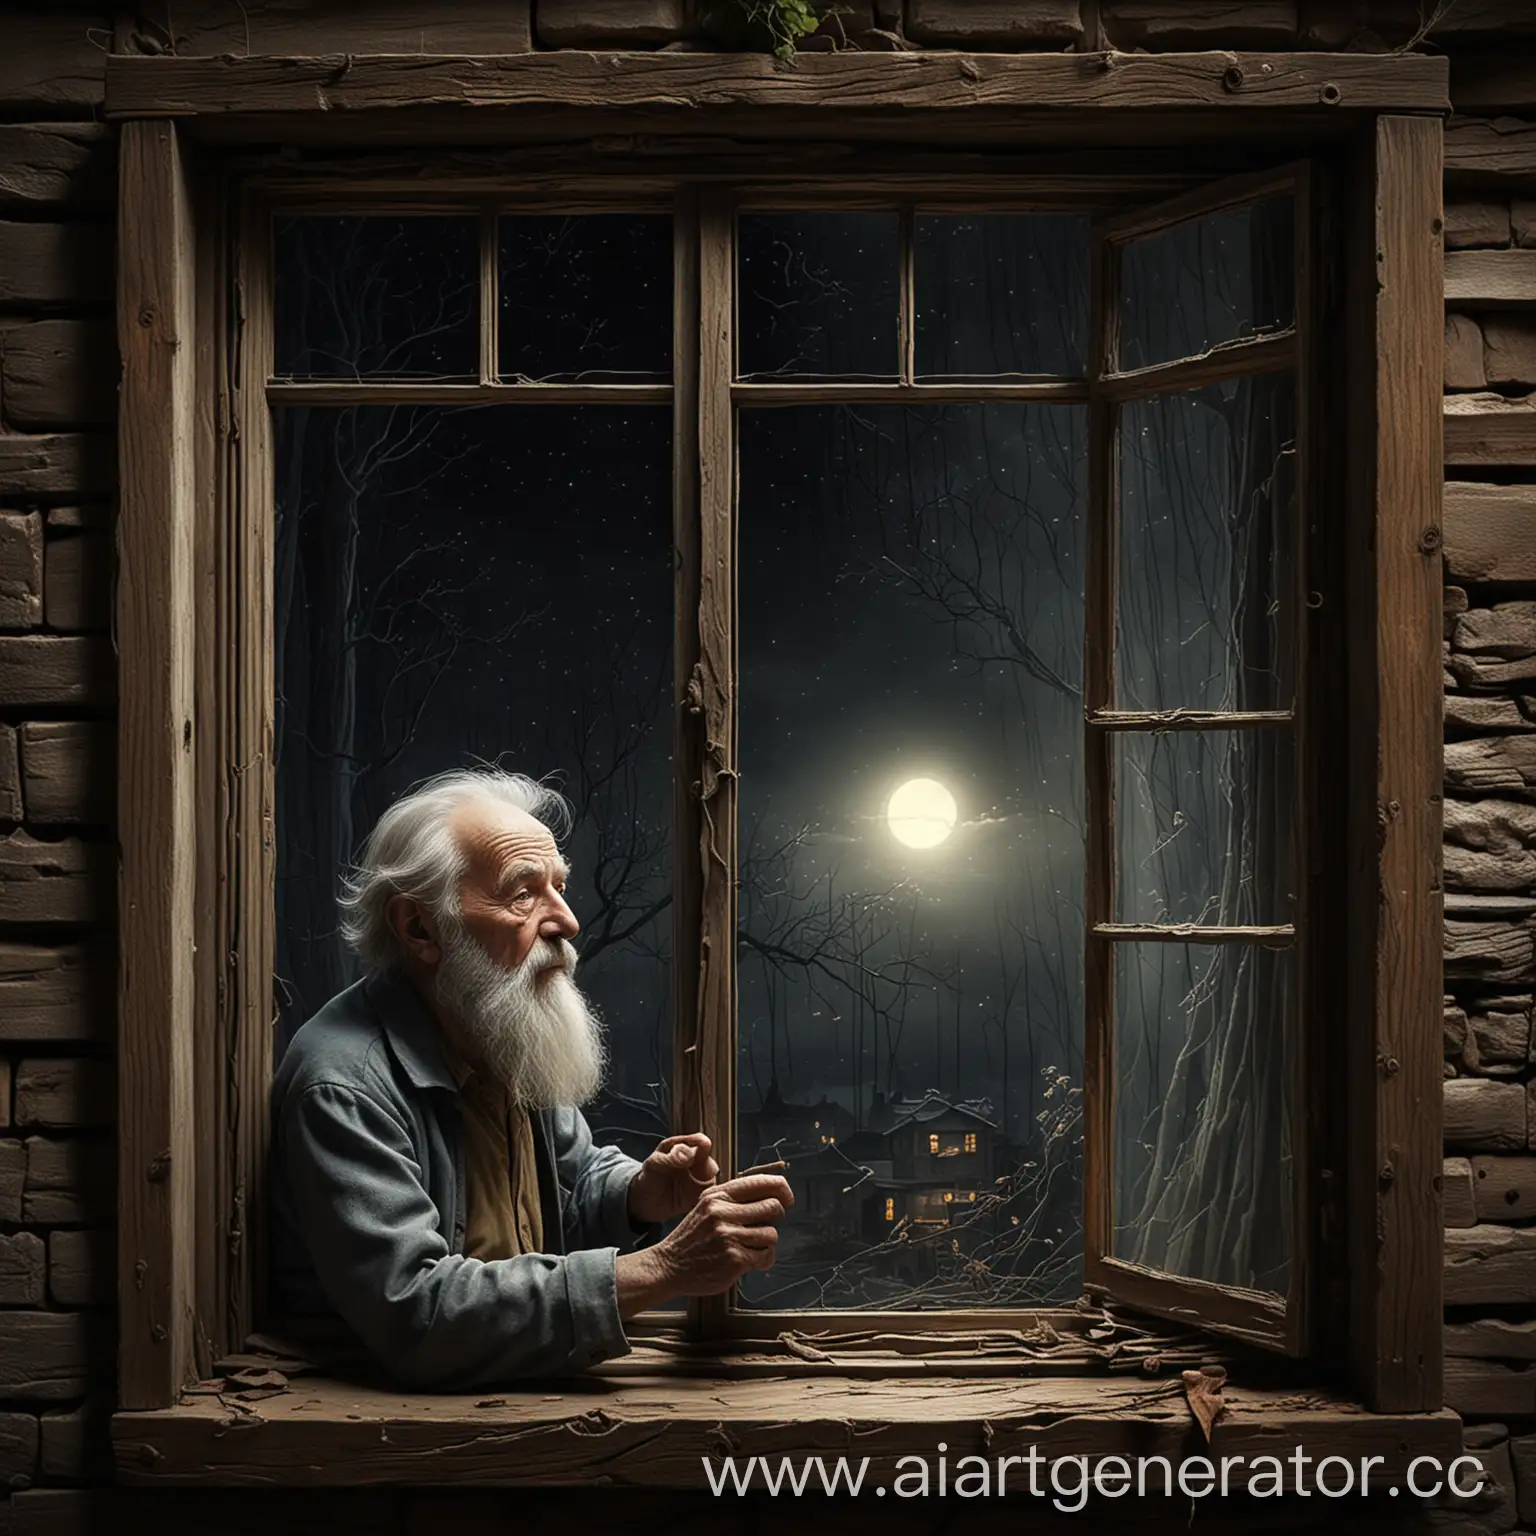 в стиле книжной иллюстрации, старик смотрит на себя в окно и видит чудоаище, они светятся в темноте, сюжет полностью показан, тонкие линии, высокая детализация, высокое разрешение